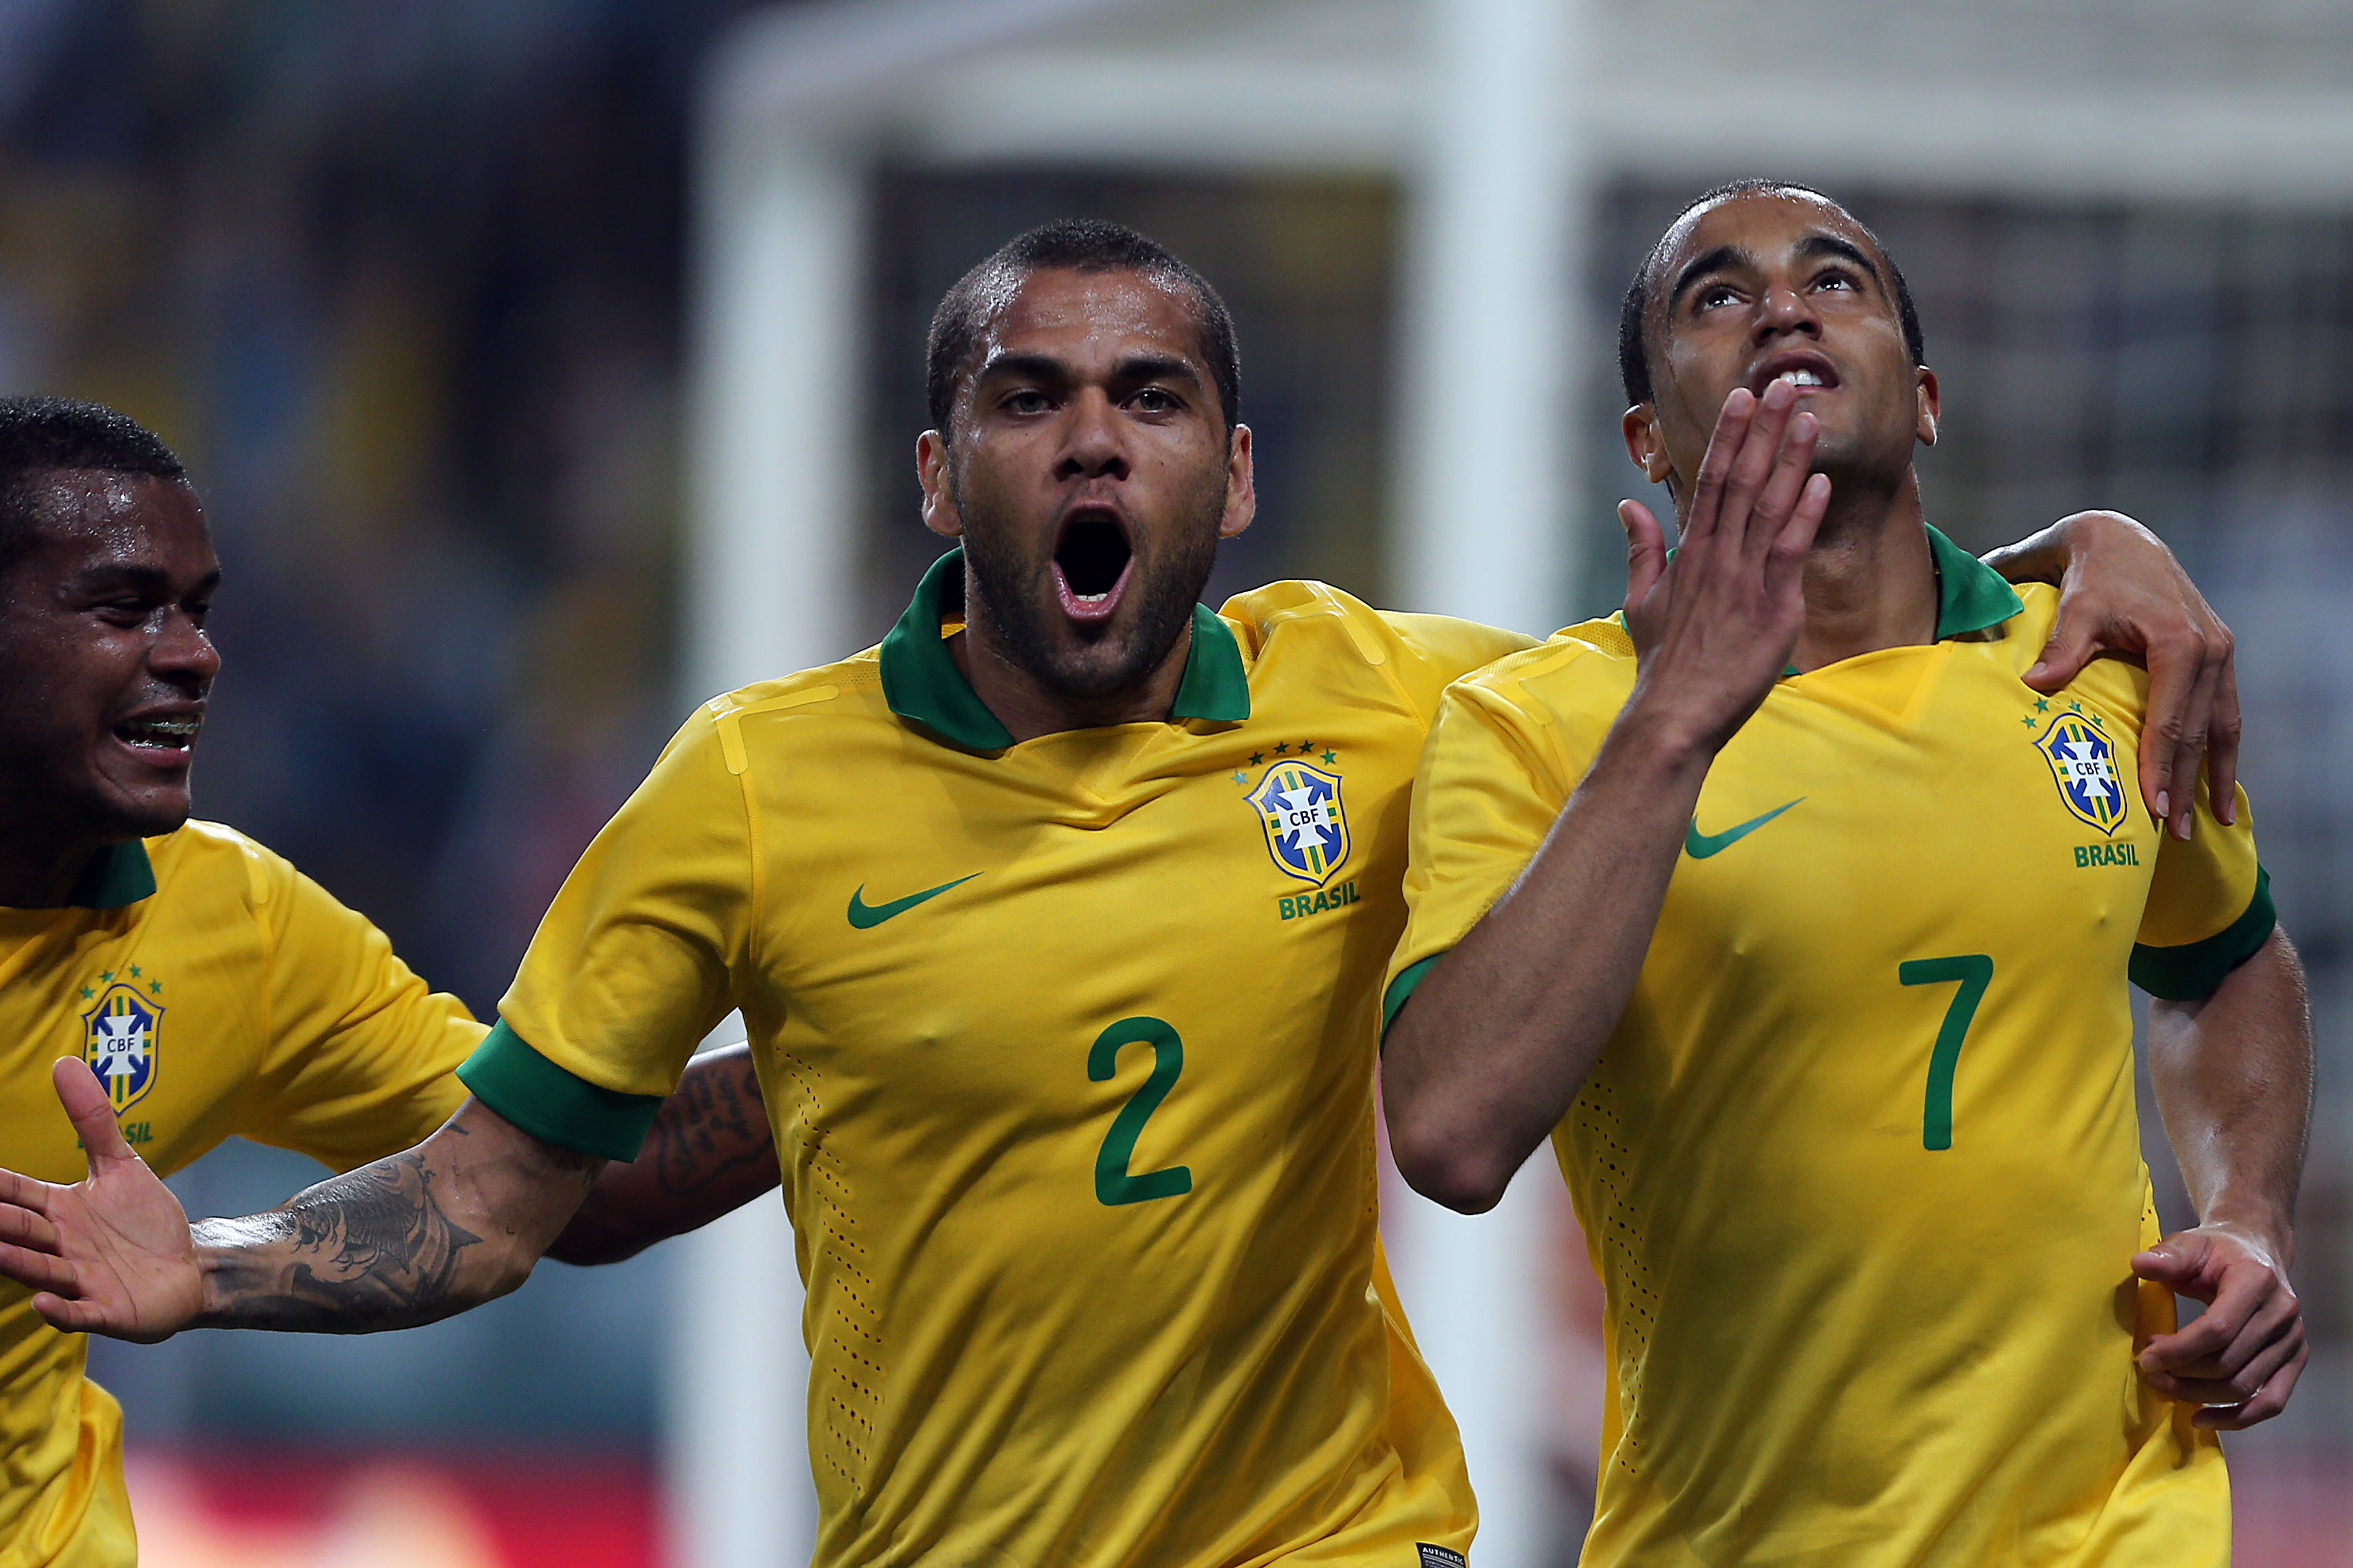 Brazil Seleção Thrash France 3-0: Daily